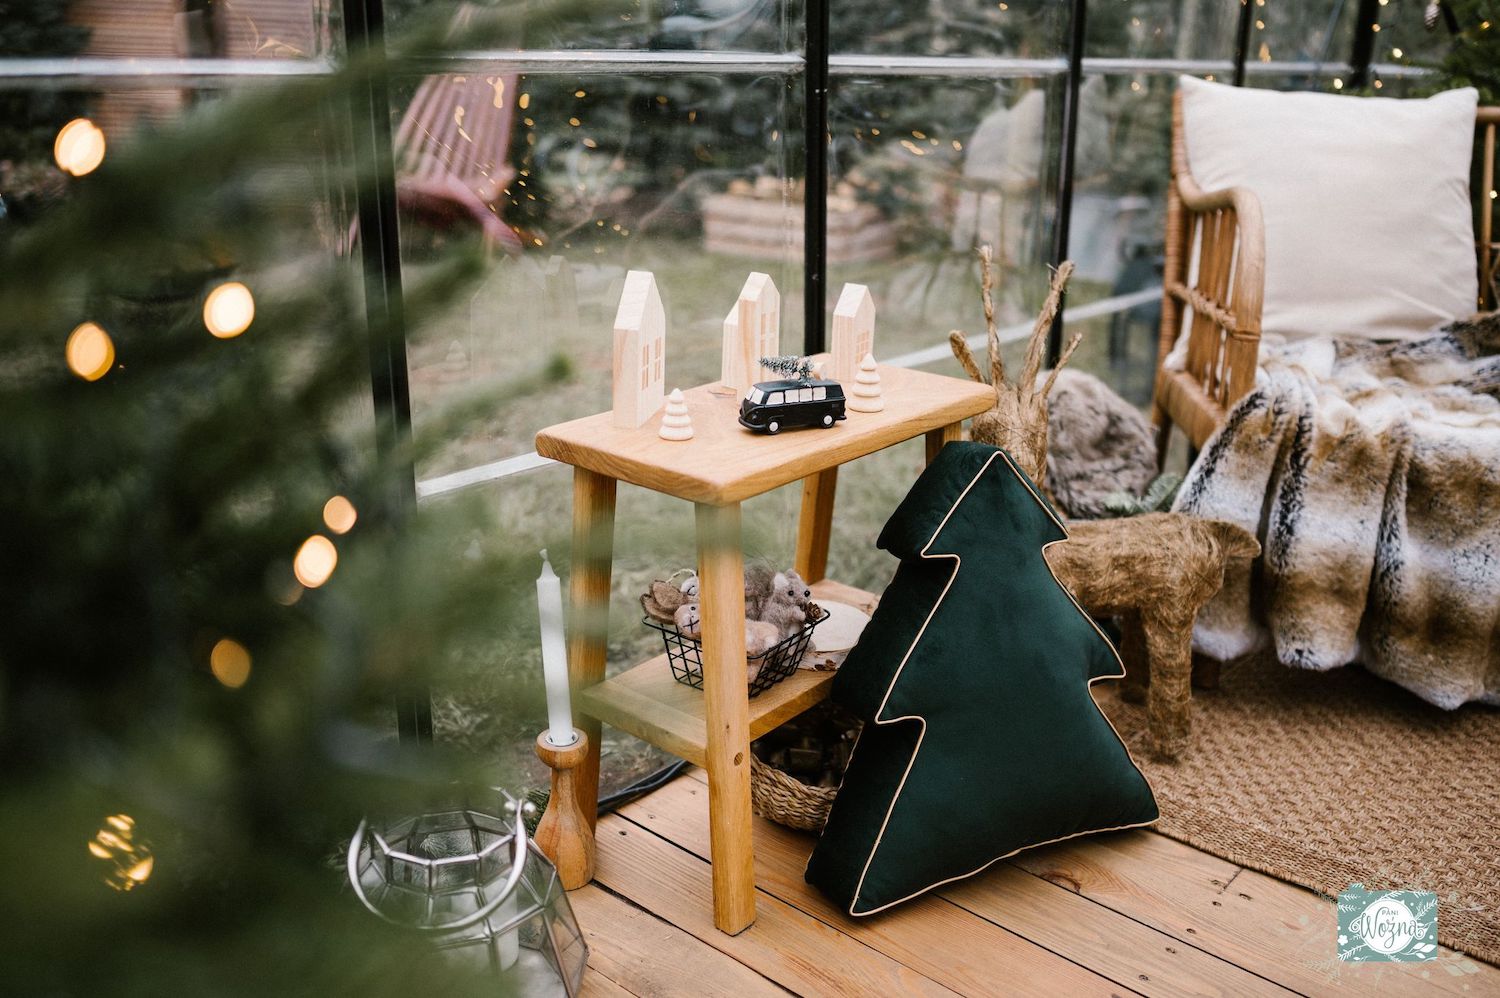 Poduszka świąteczna choinka od Bettys Home w pięknie udekorowanej szklarni w klimacie świątecznym